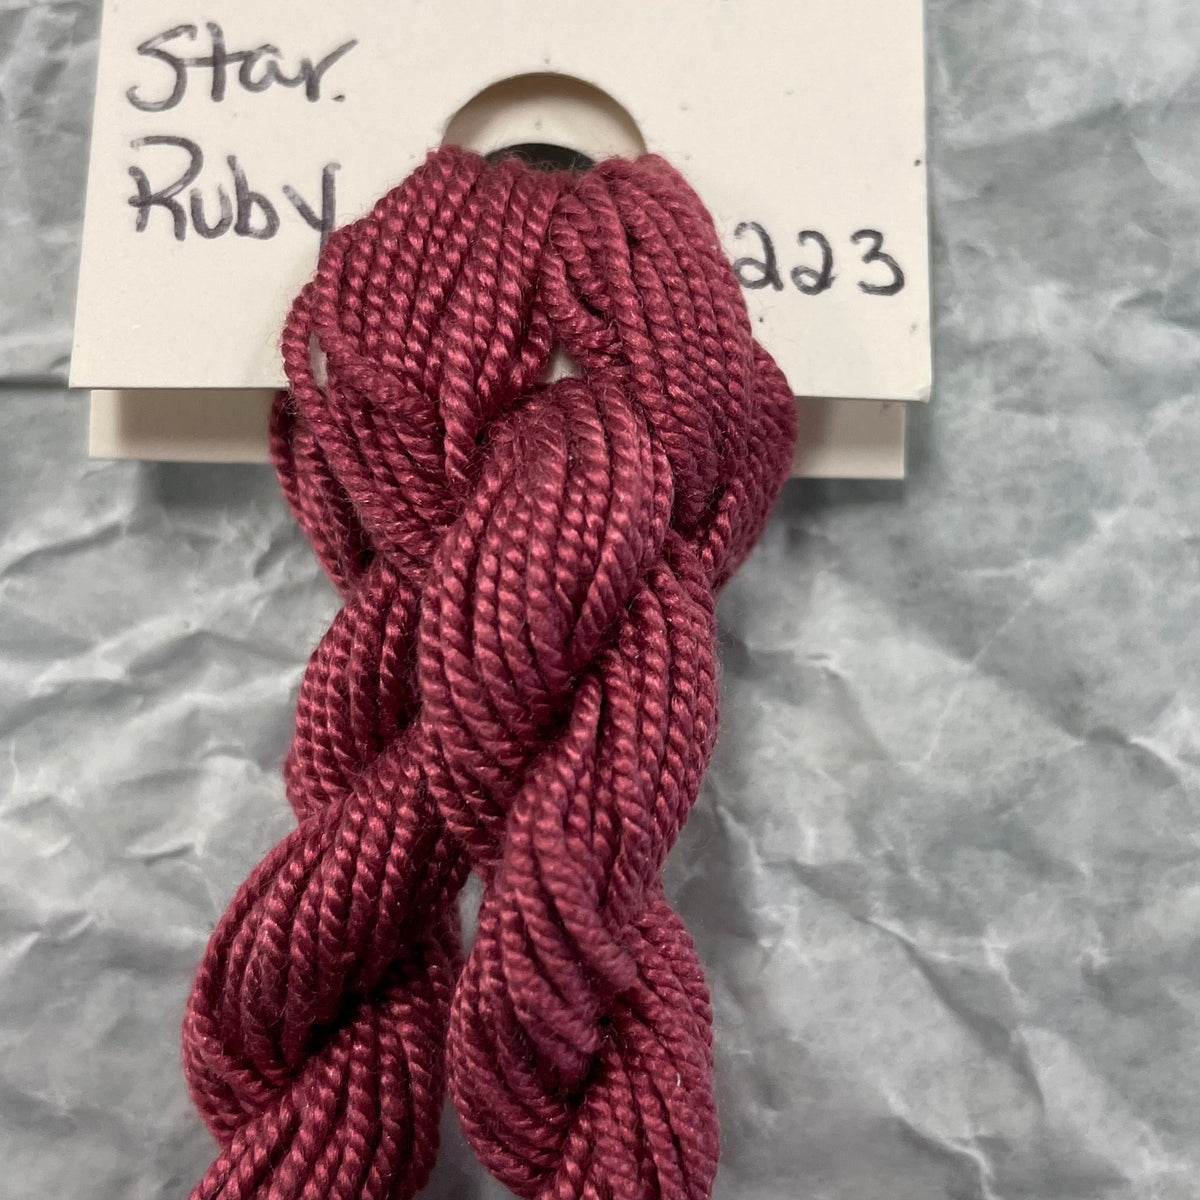 223 Star Ruby - Shinju Silk Thread Solid